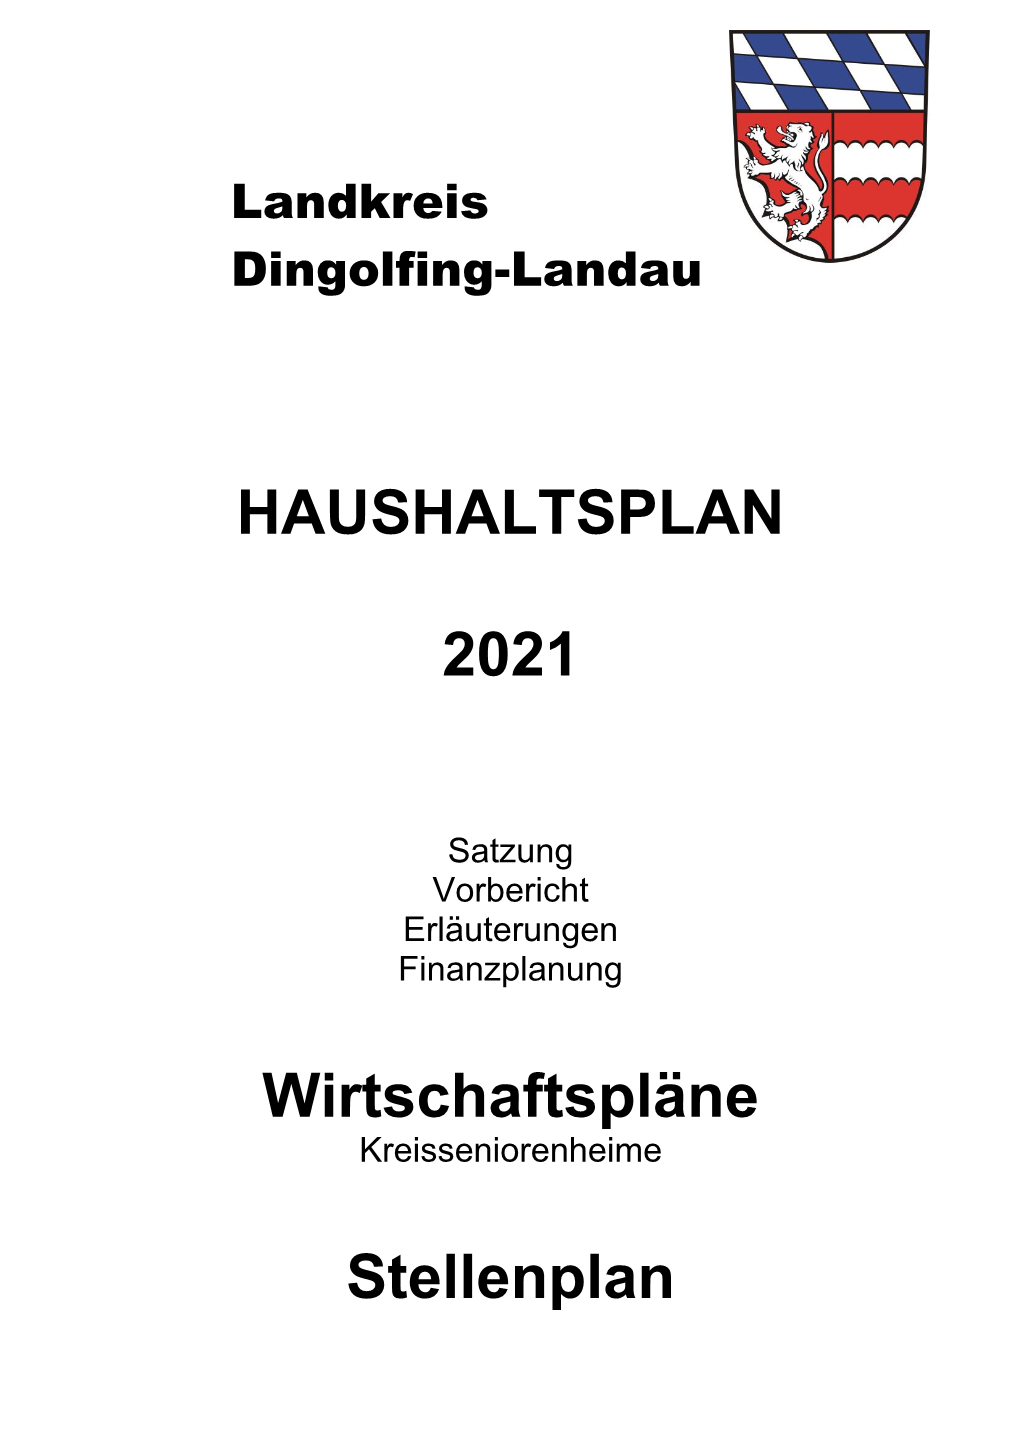 HAUSHALTSPLAN 2021 Wirtschaftspläne Stellenplan